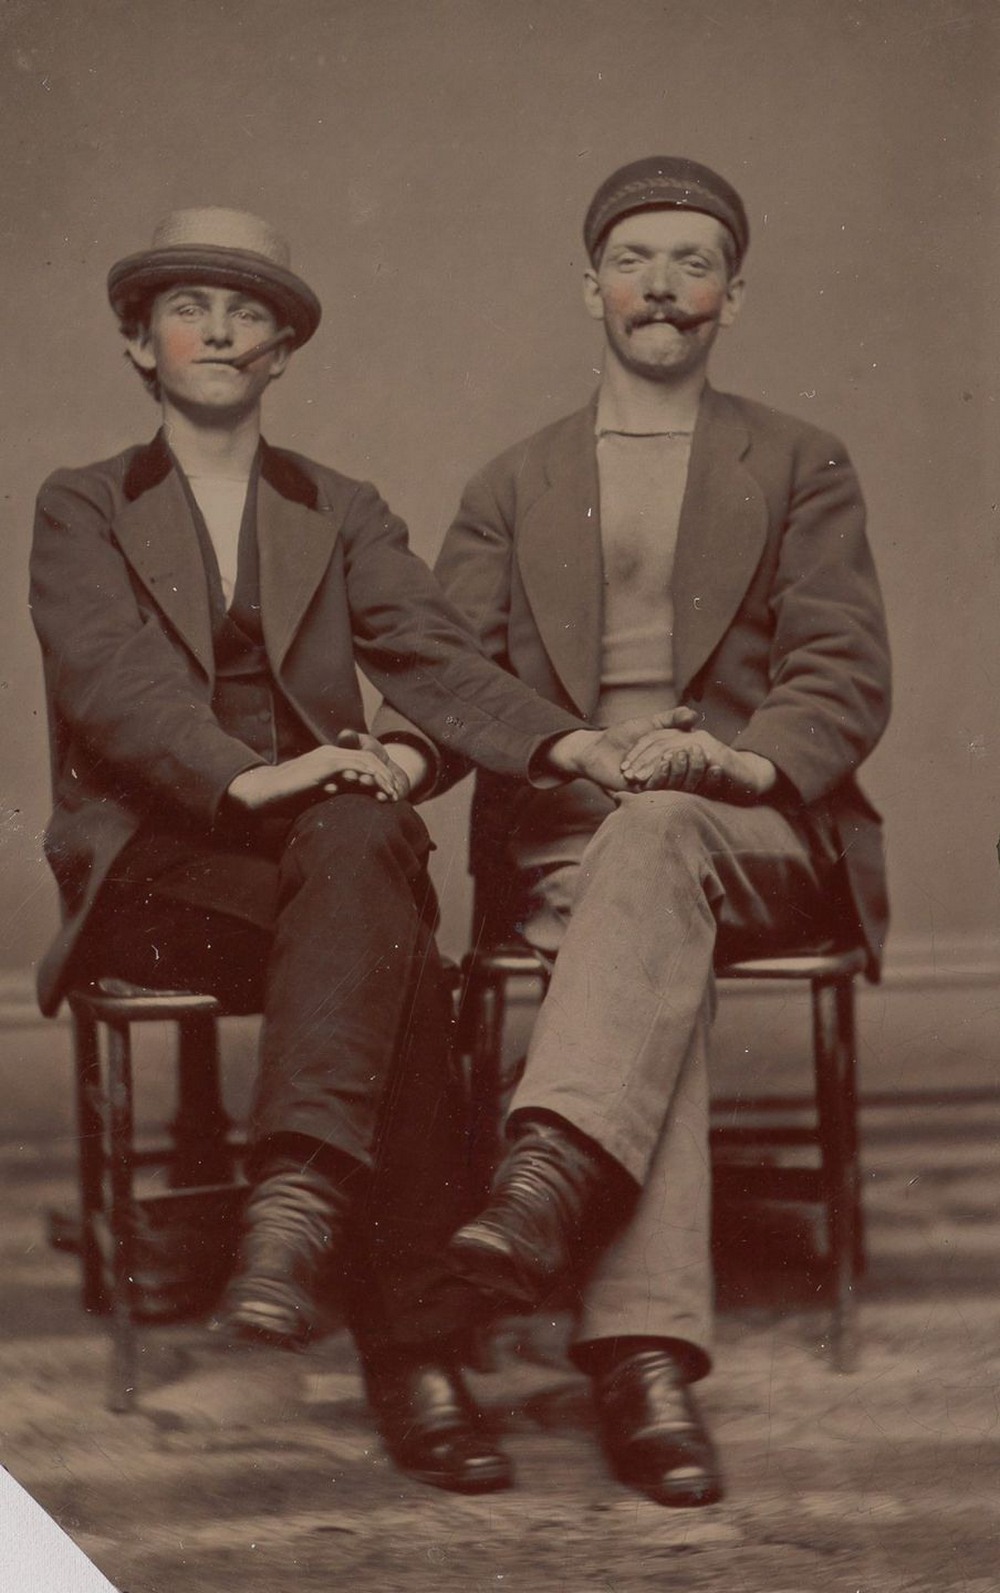 Броманс в викторианскую эпоху: интимные мужские объятия в редких фотографиях конца 1800-х годов  1